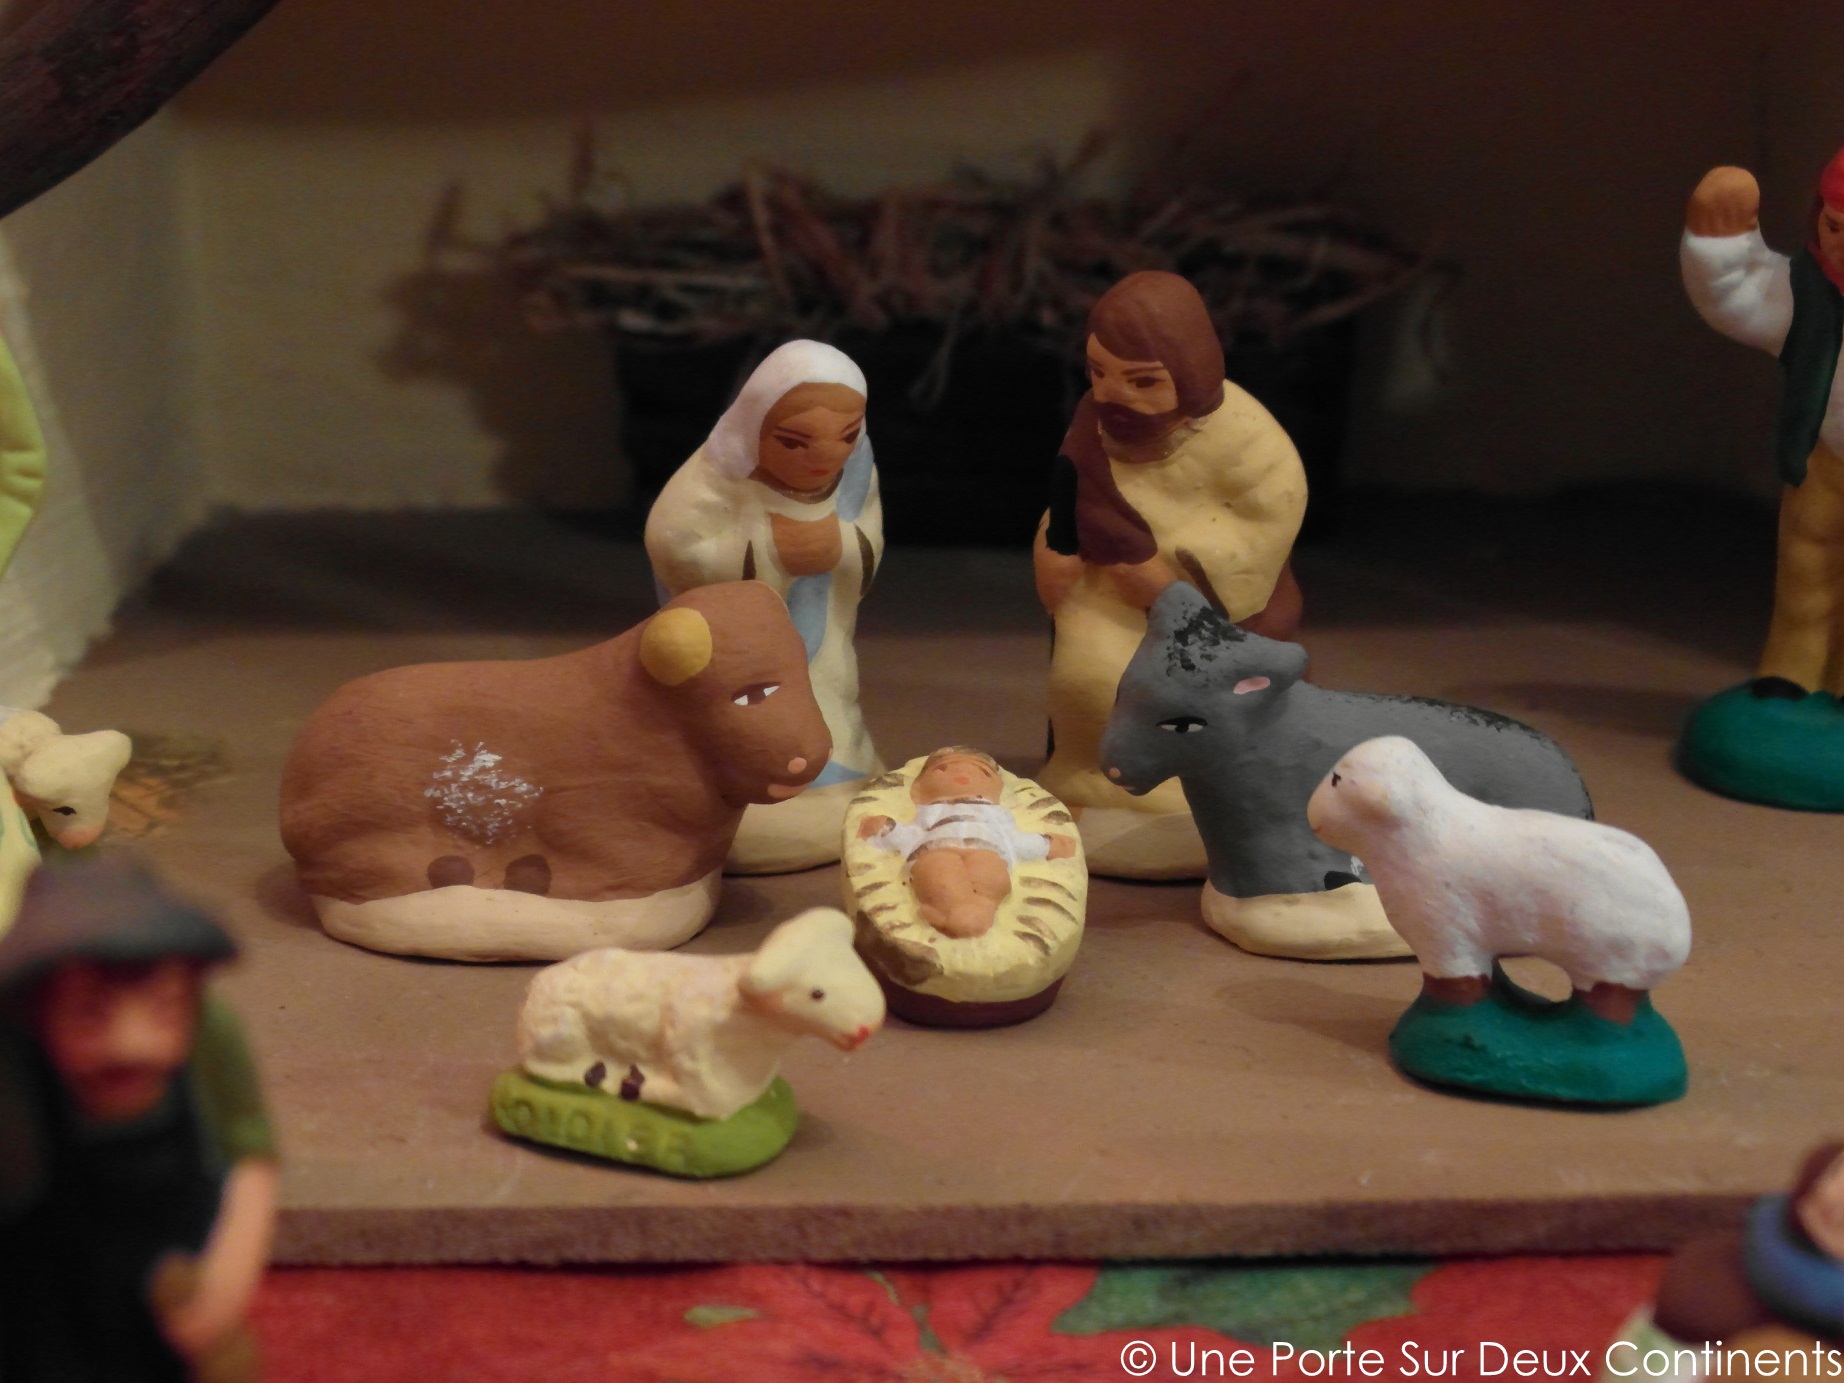 Le Noël des petits santons